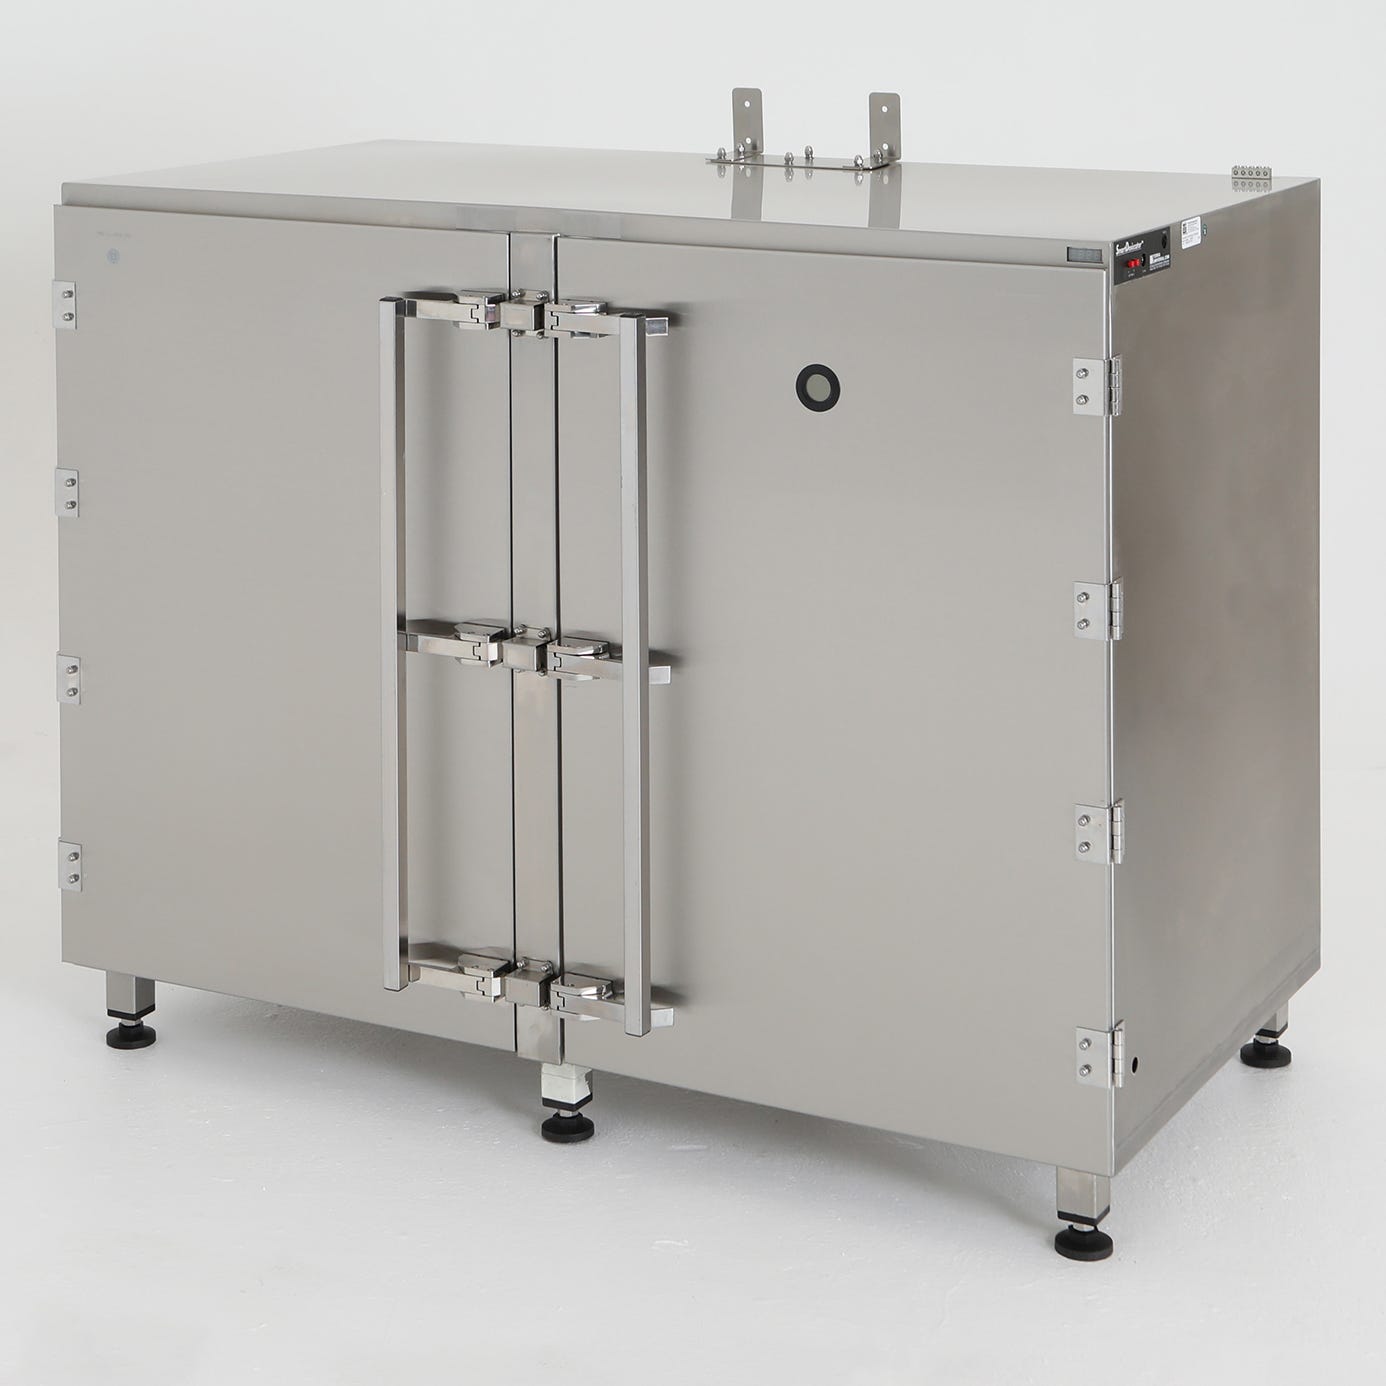 Terra Universal Drum Storage Desiccator Cabinet